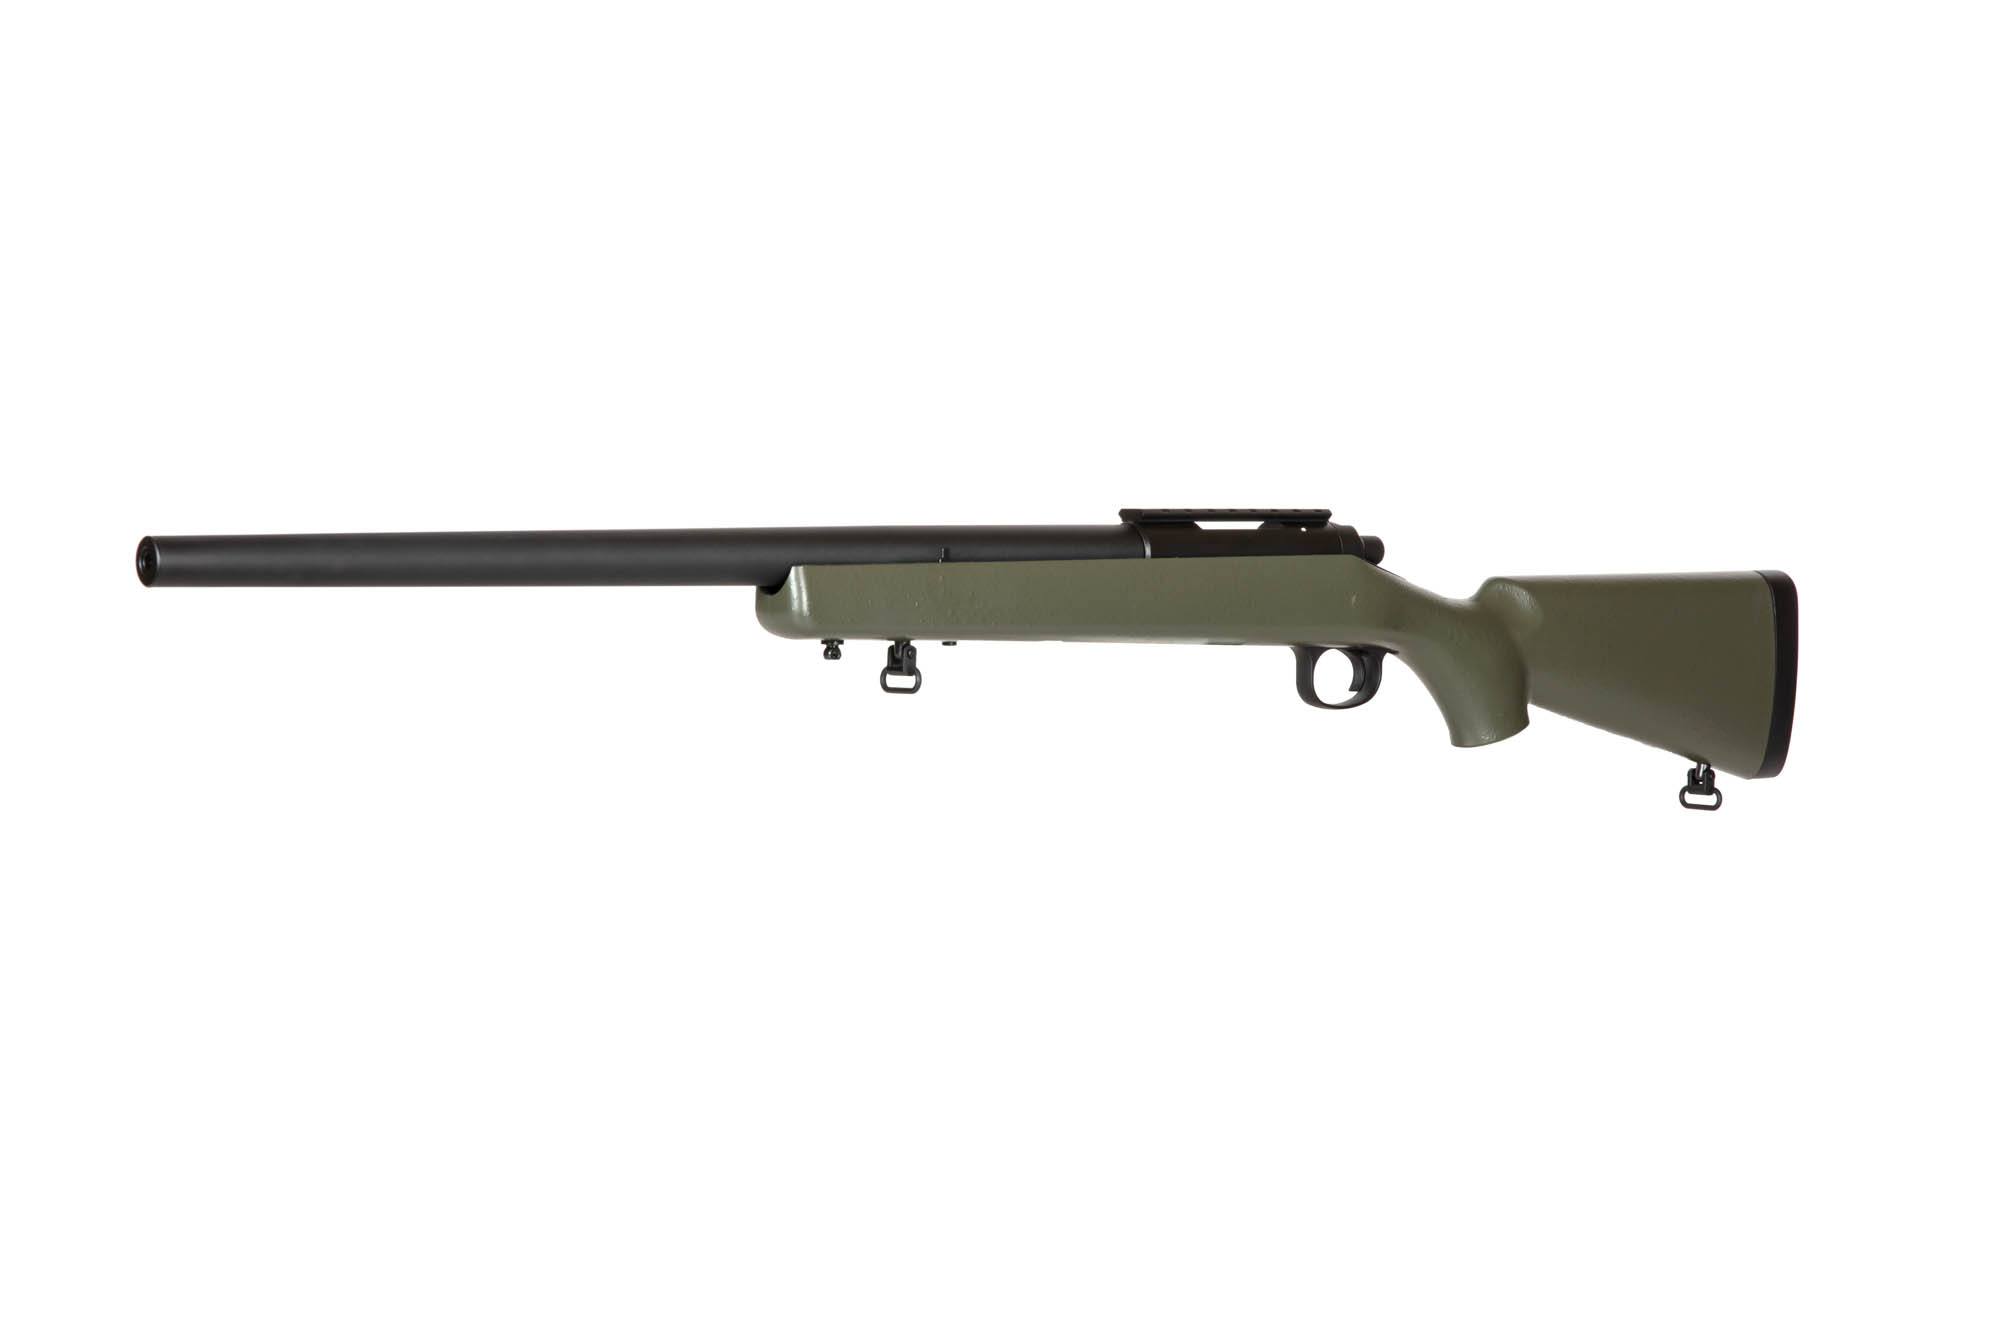 SW-10 Upgraded VSR10 Sniper Rifle Replica - olive